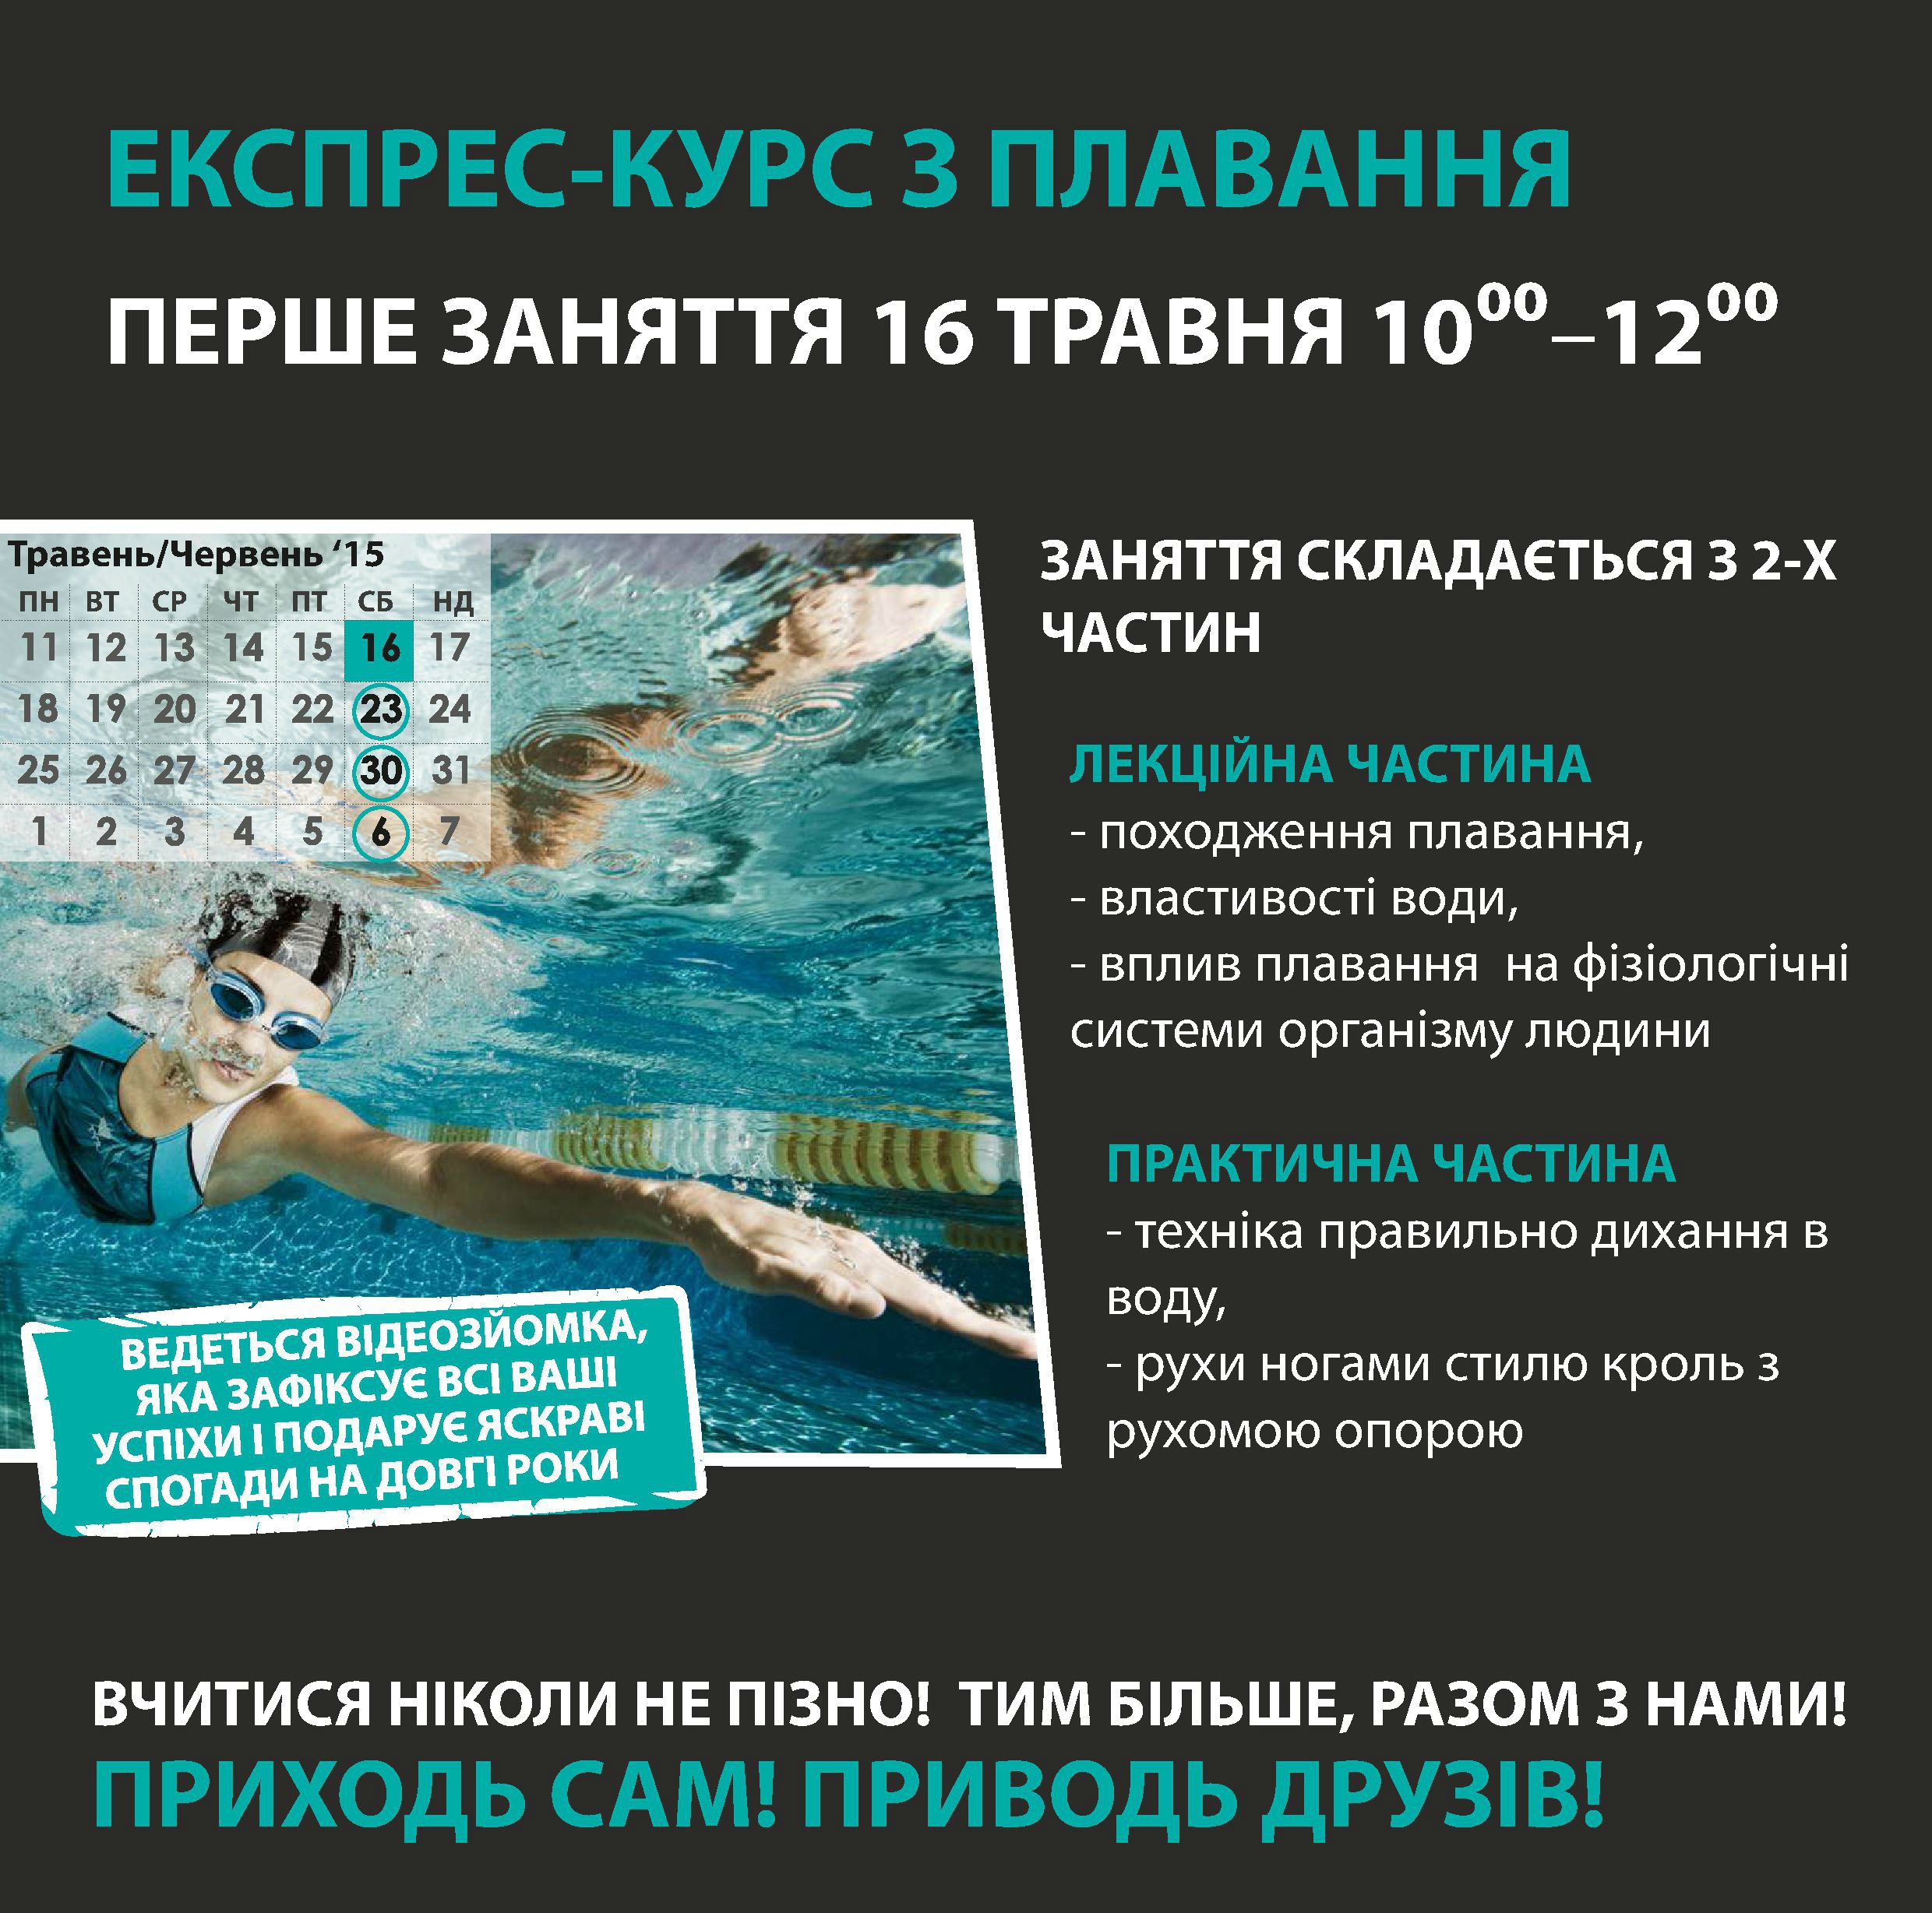 Экспресс-курсы по плаванию в "Подольский"